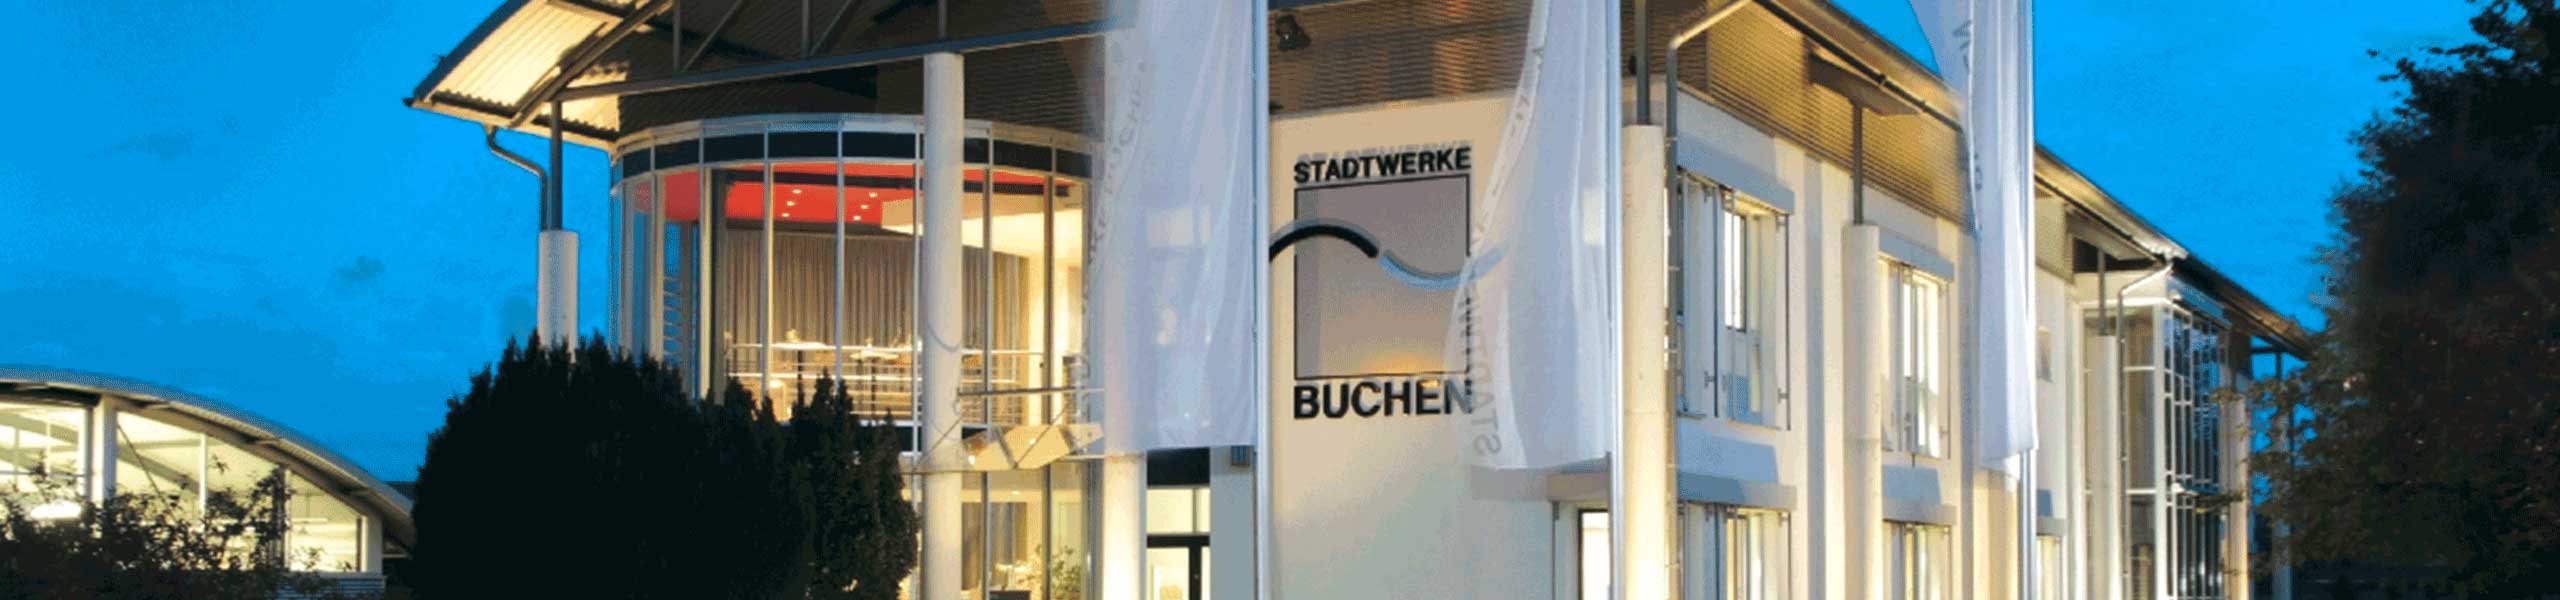 Stadtwerke Buchen GmbH & Co KG - Strom